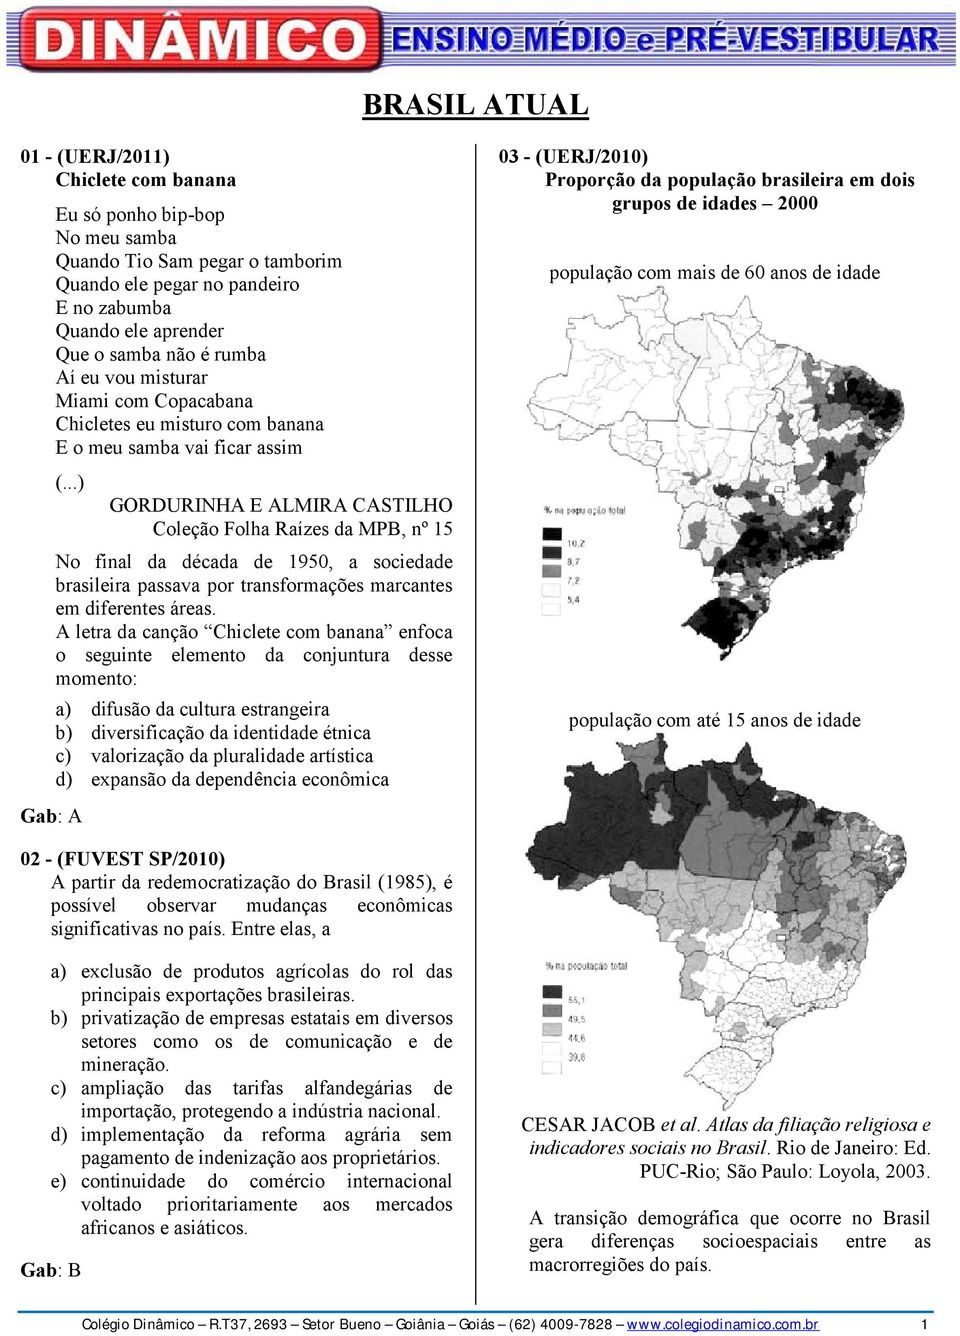 ..) GORDURINHA E ALMIRA CASTILHO Coleção Folha Raízes da MPB, nº 15 No final da década de 1950, a sociedade brasileira passava por transformações marcantes em diferentes áreas.